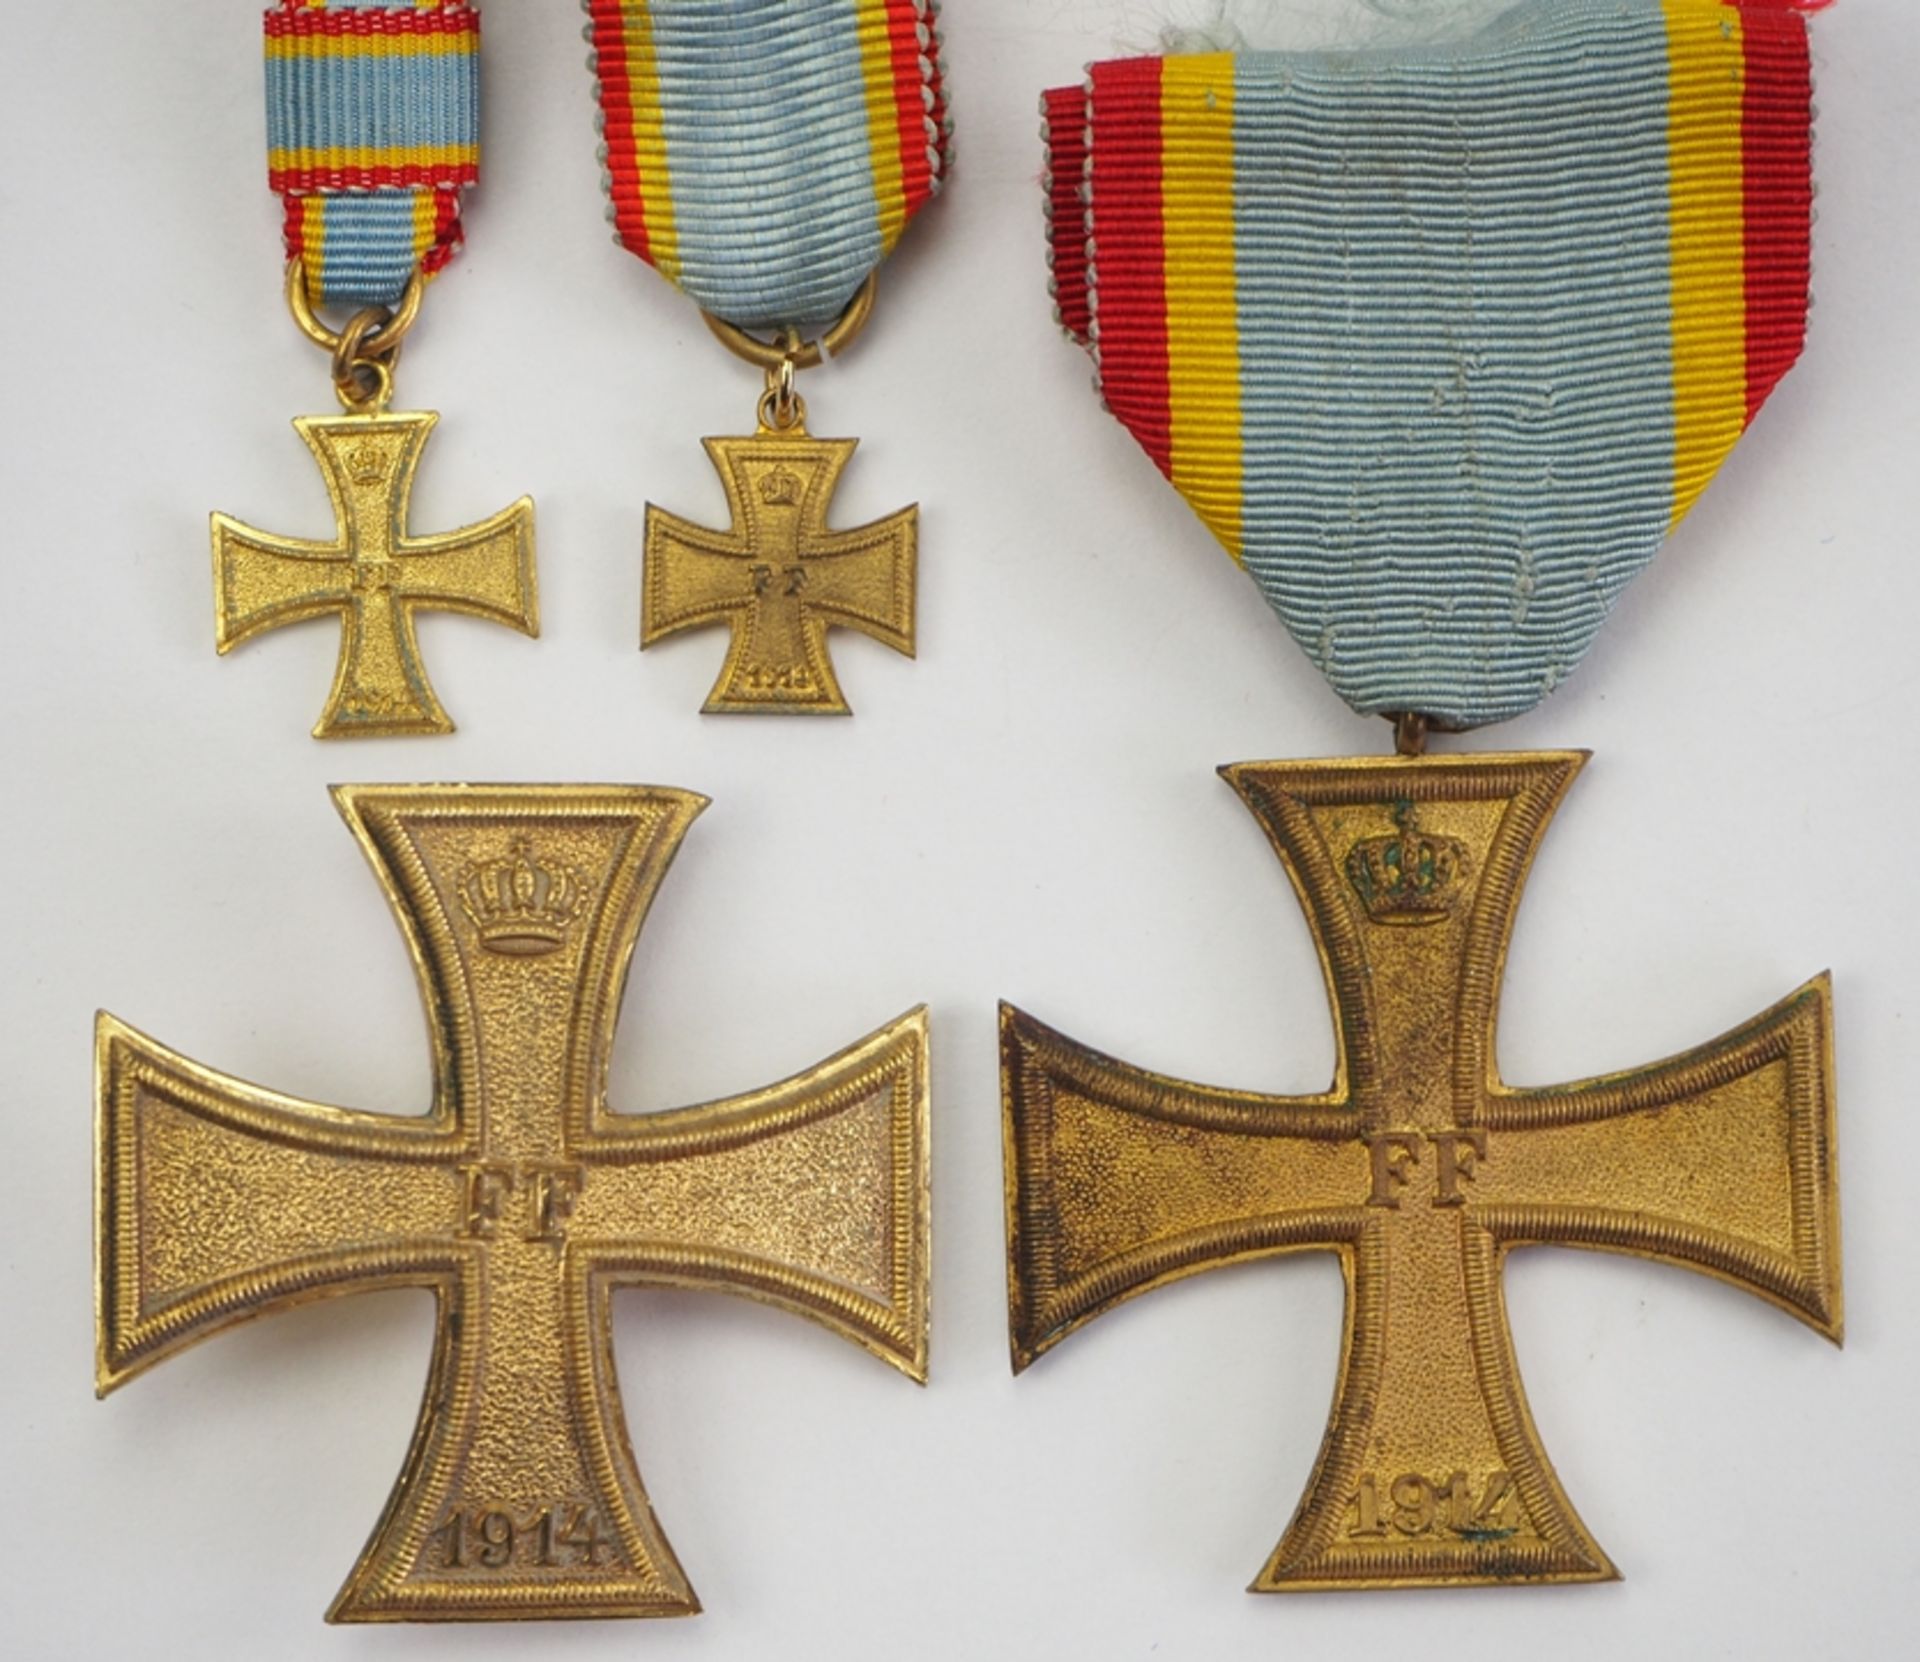 Mecklenburg-Schwerin: Militärverdienstkreuz, 1. und 2. Klasse, mit Miniatur.